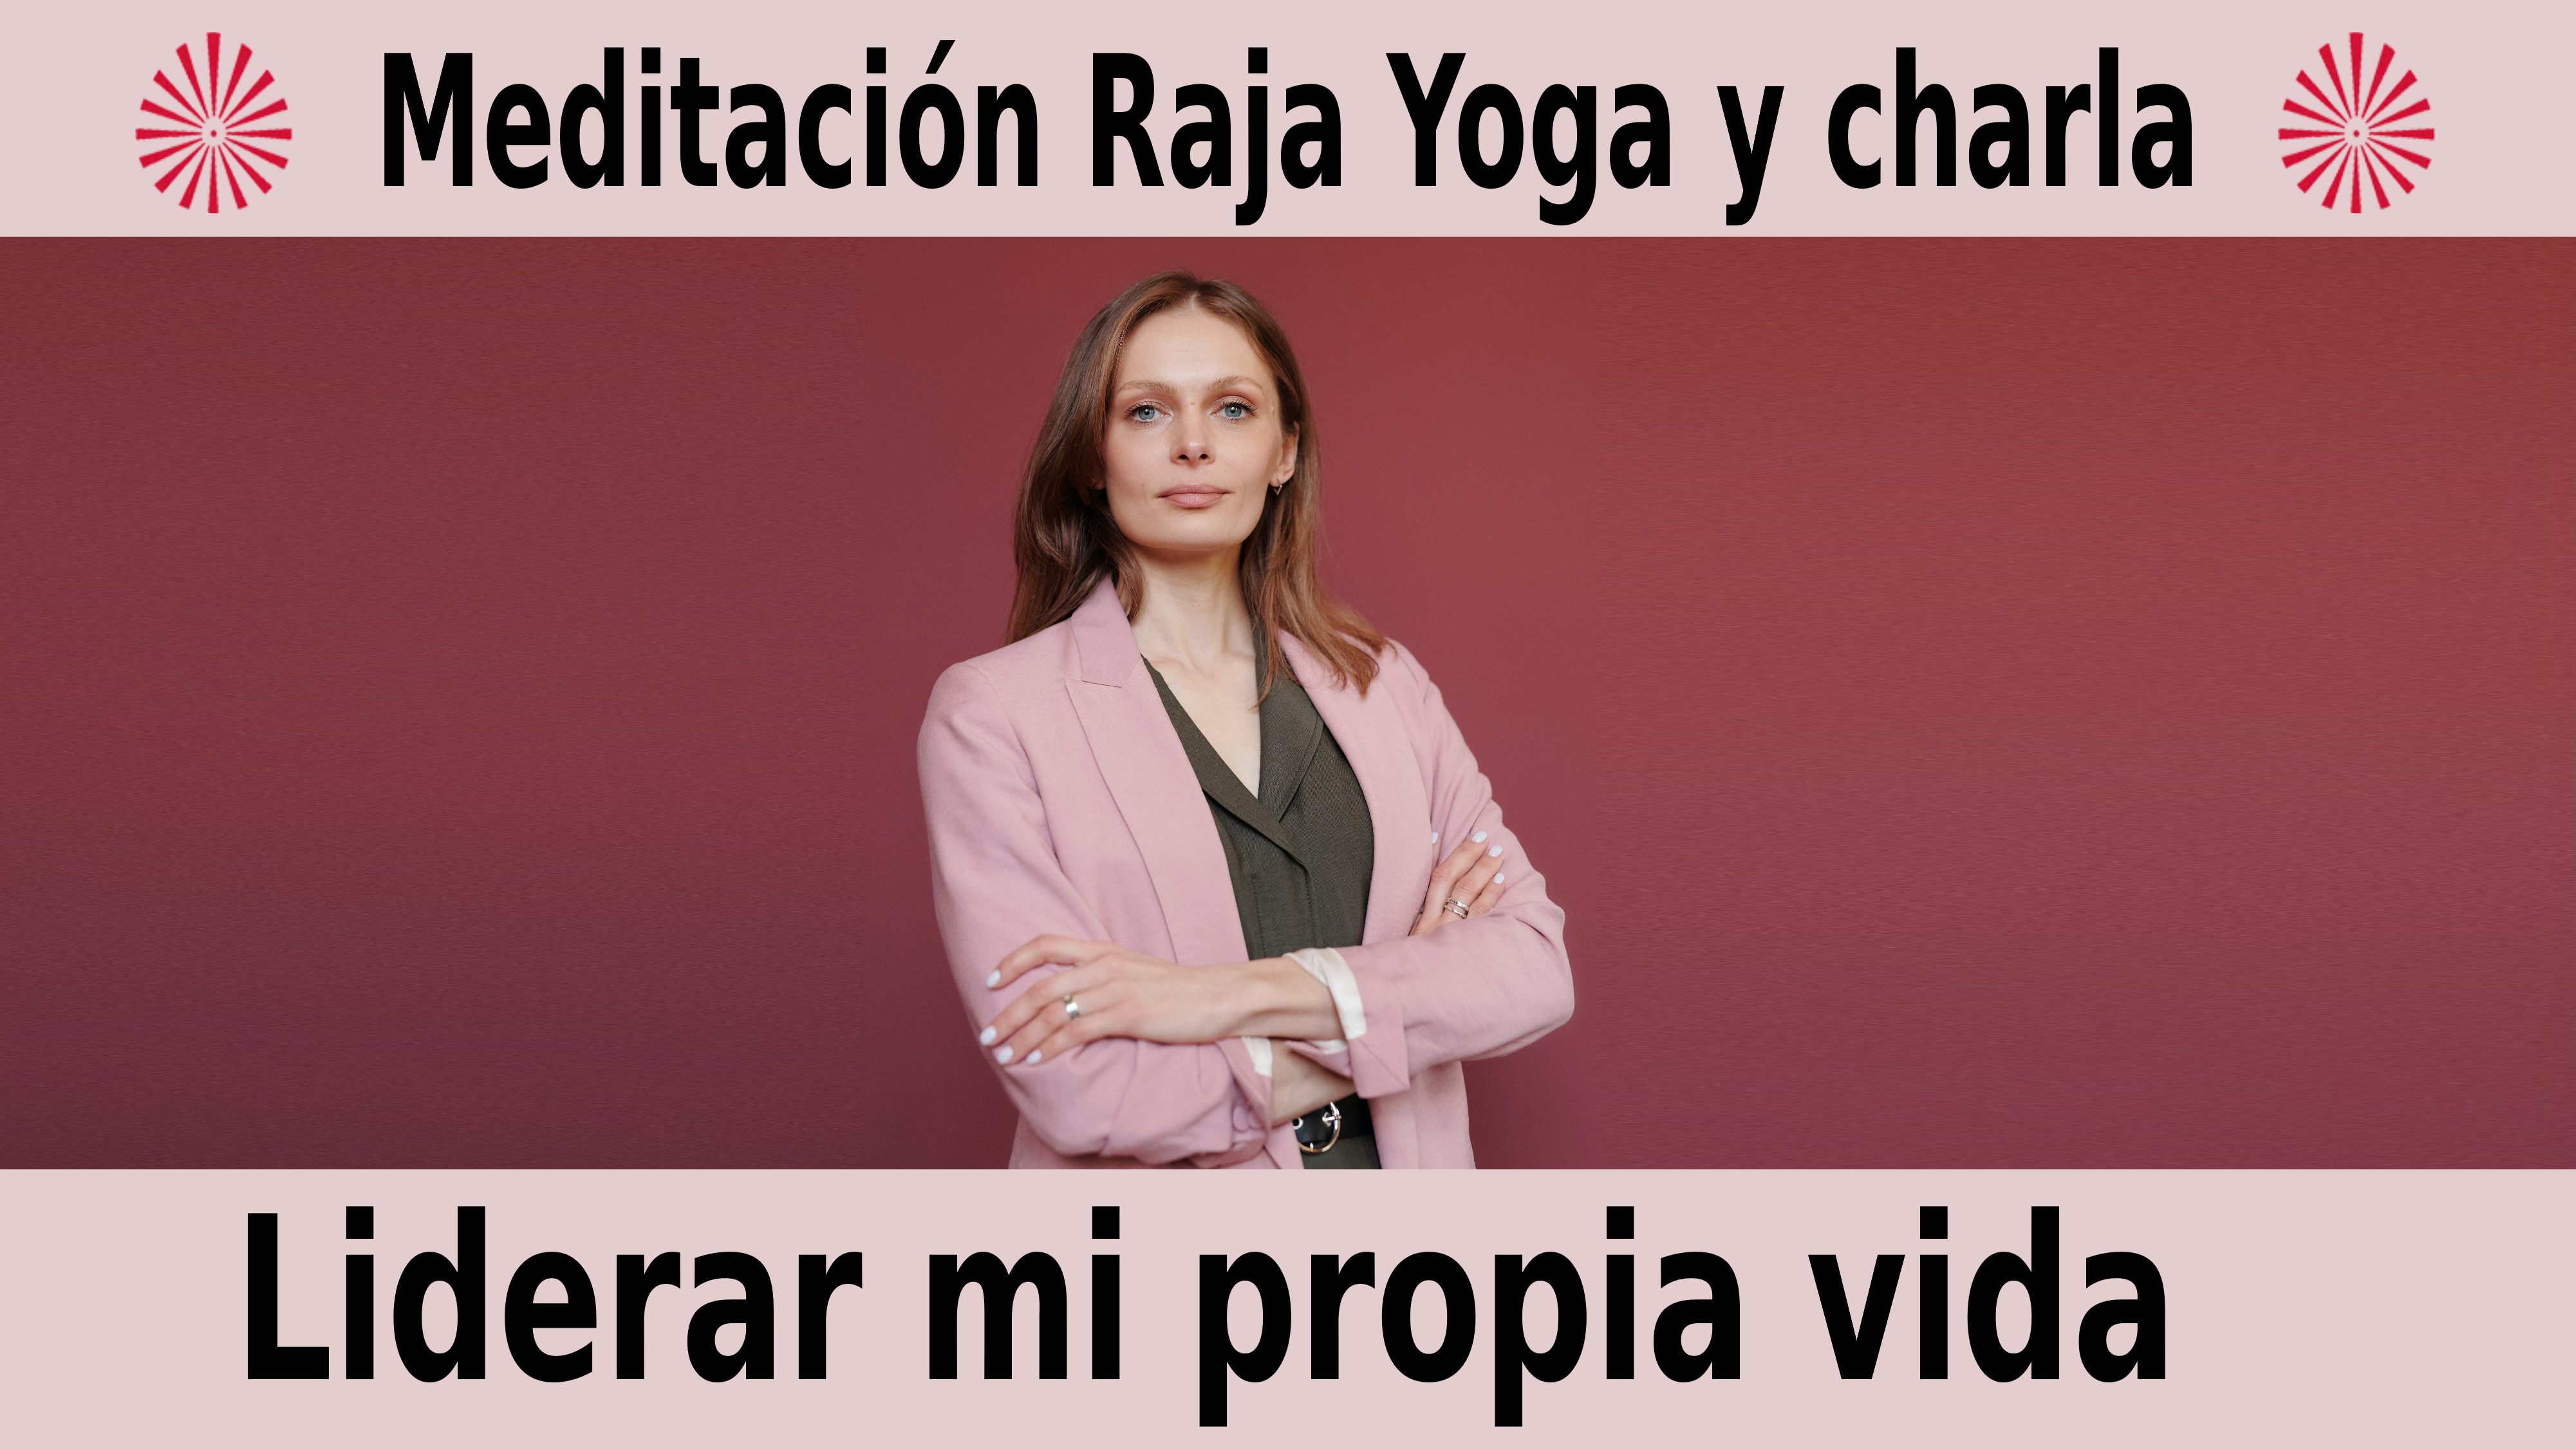 Meditación Raja Yoga y charla:  Liderar mi propia Vida (5 Diciembre 2020) On-line desde Valencia